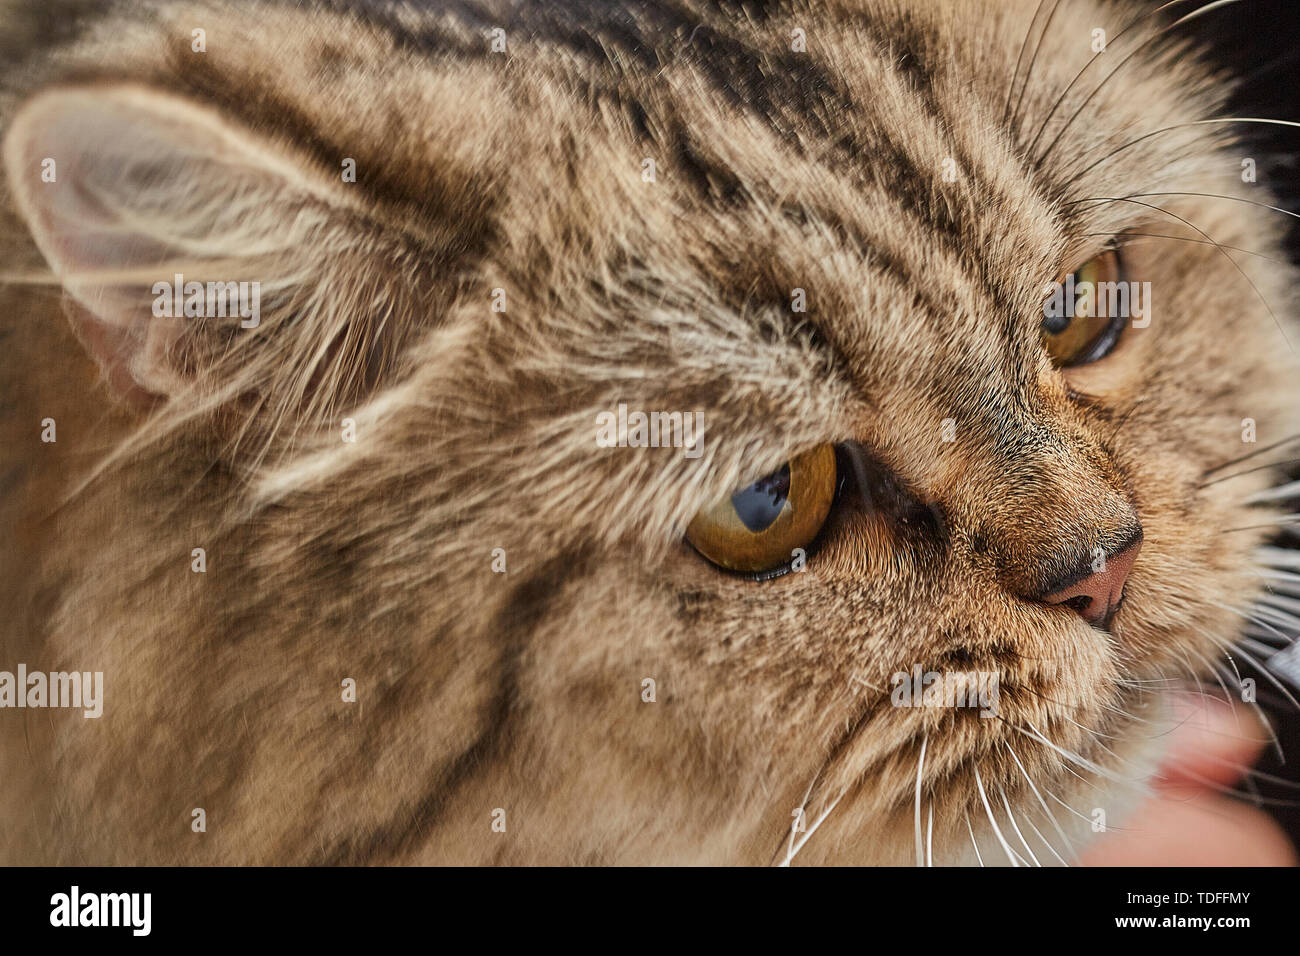 Cute Siberian senli cat Stock Photo